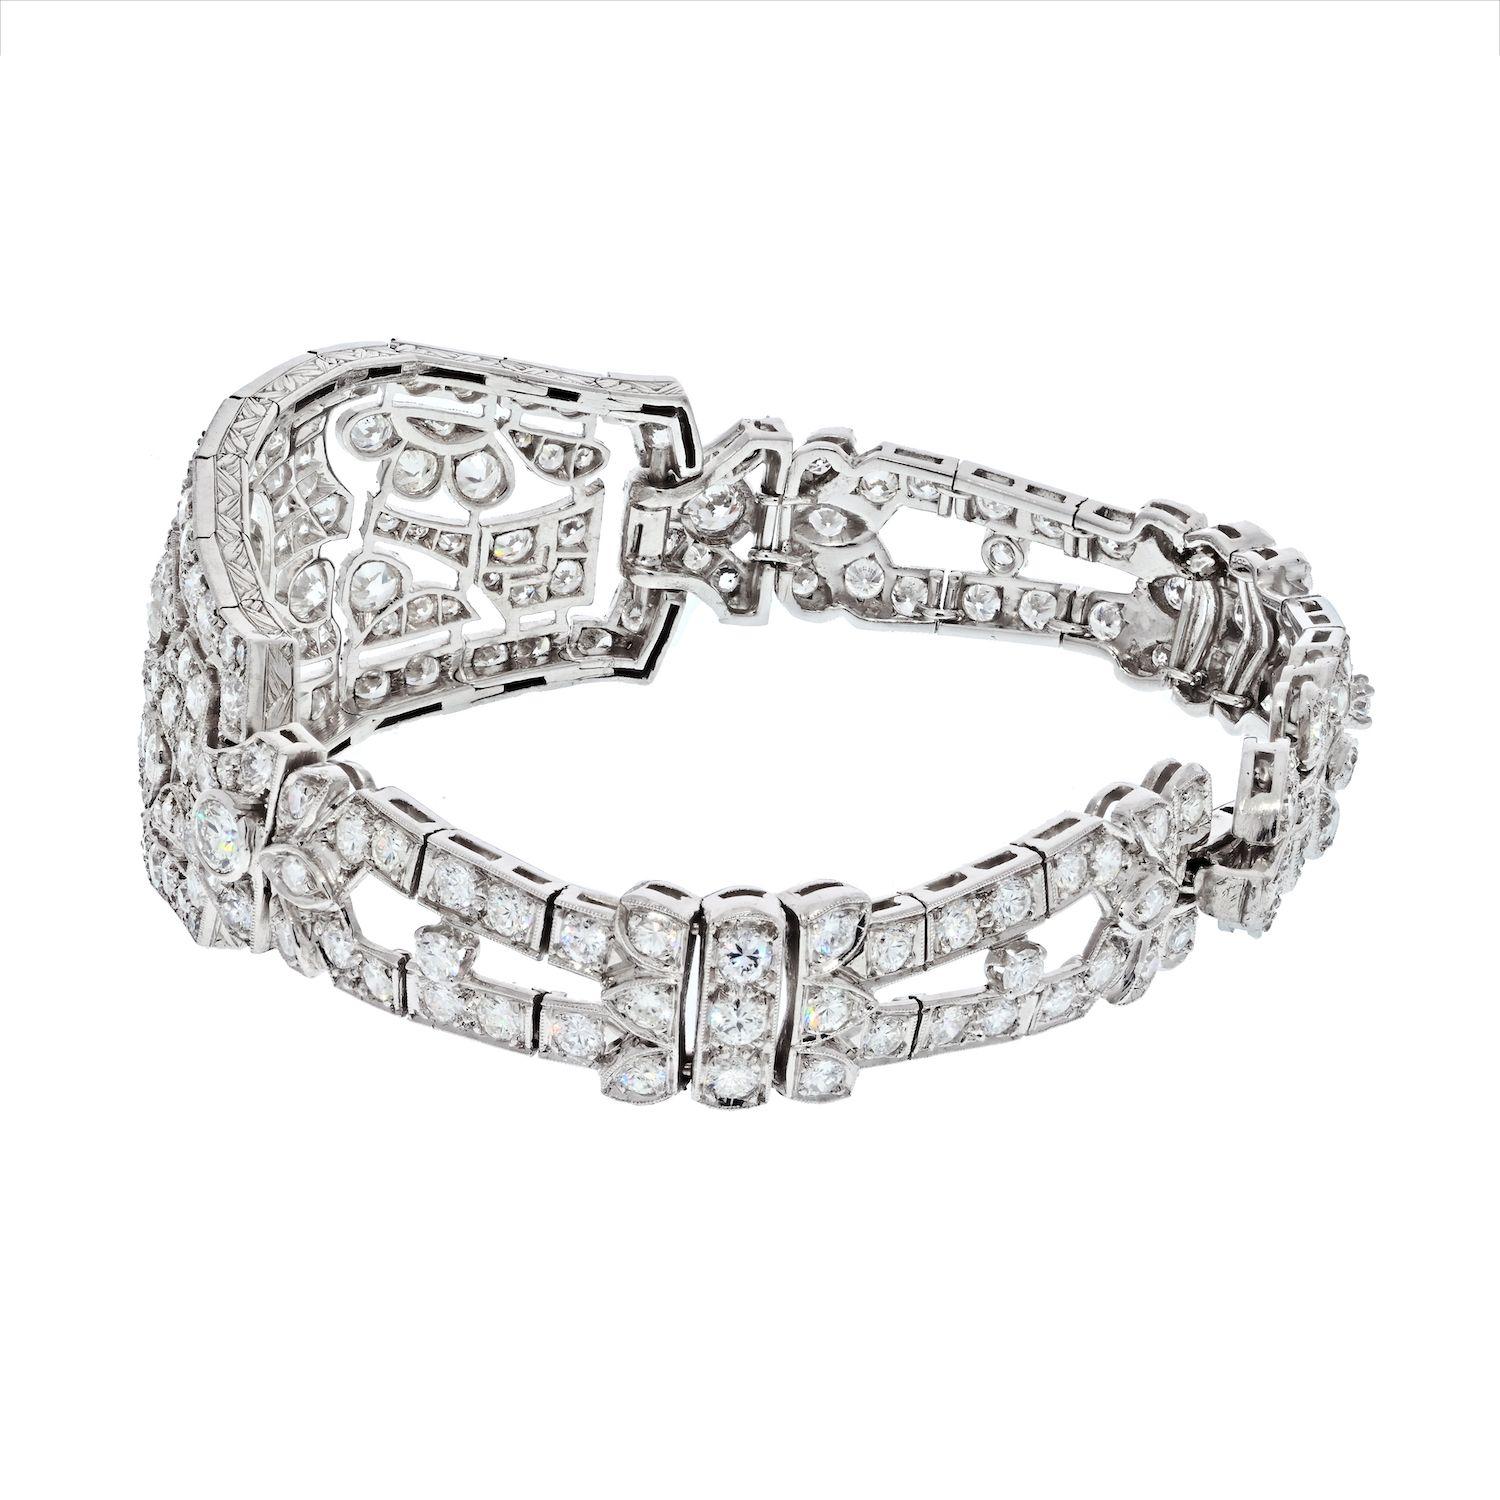 Ce magnifique bracelet Art déco présente 12,00 carats de diamants scintillants et un magnifique motif filigrane en platine. Le diamant central est une pierre précieuse de taille ancienne de 0,75 carat. Le diamant est serti dans une monture à lunette